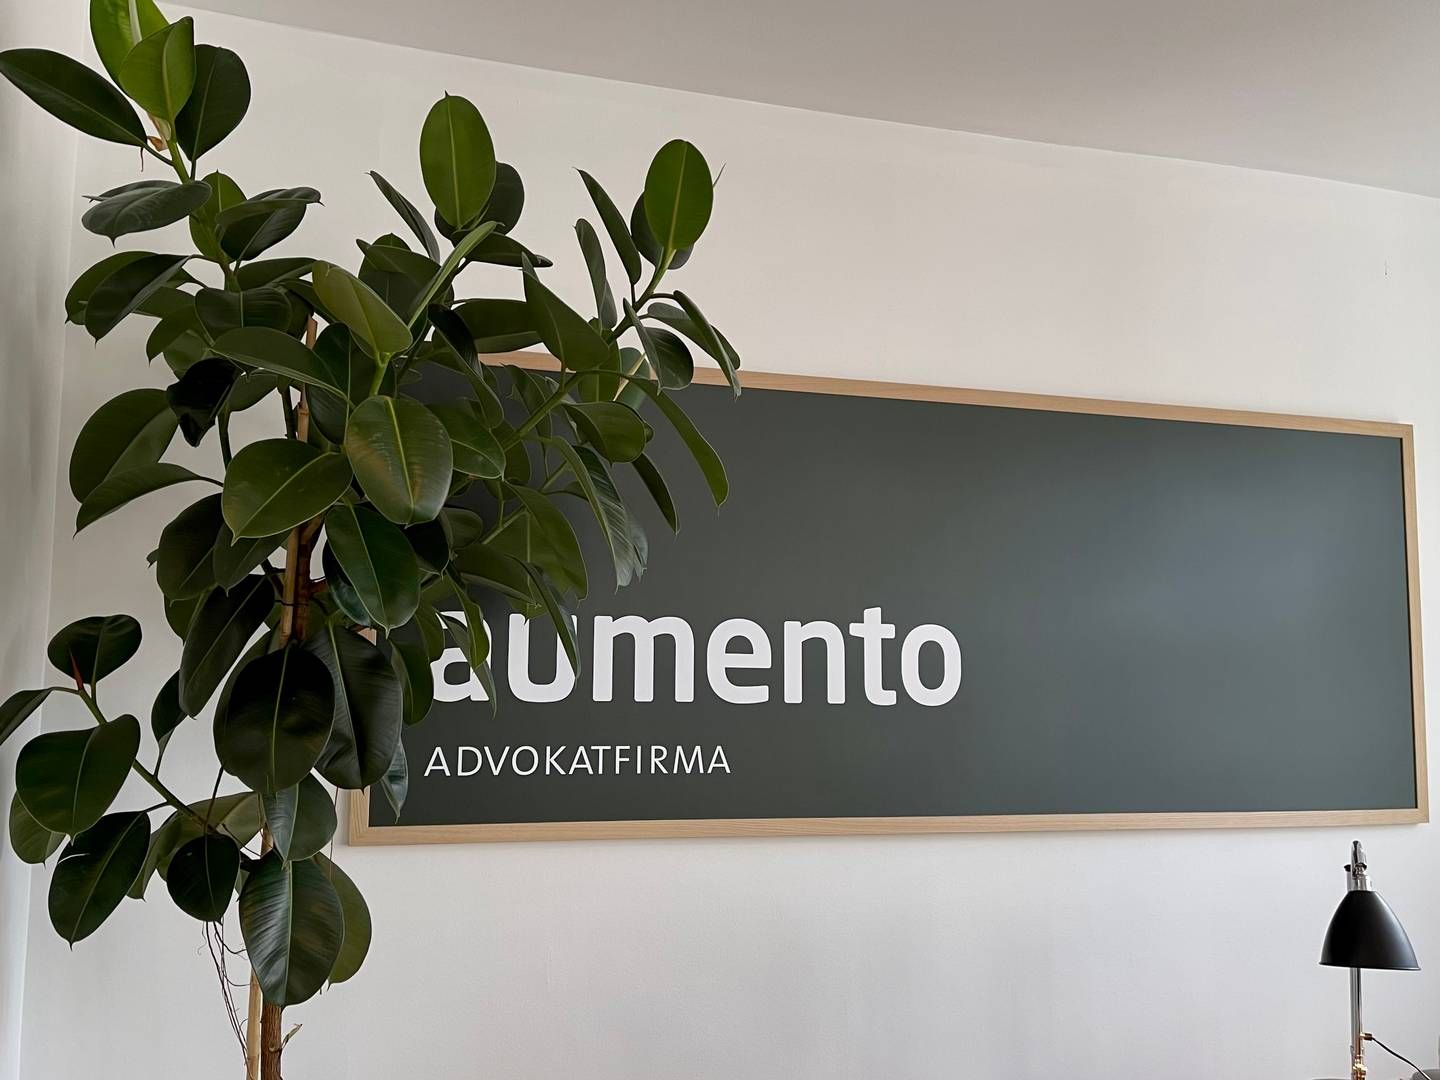 Advokaterne i Aumento markedsfører sig på samme platform. | Foto: Aumento / Pr